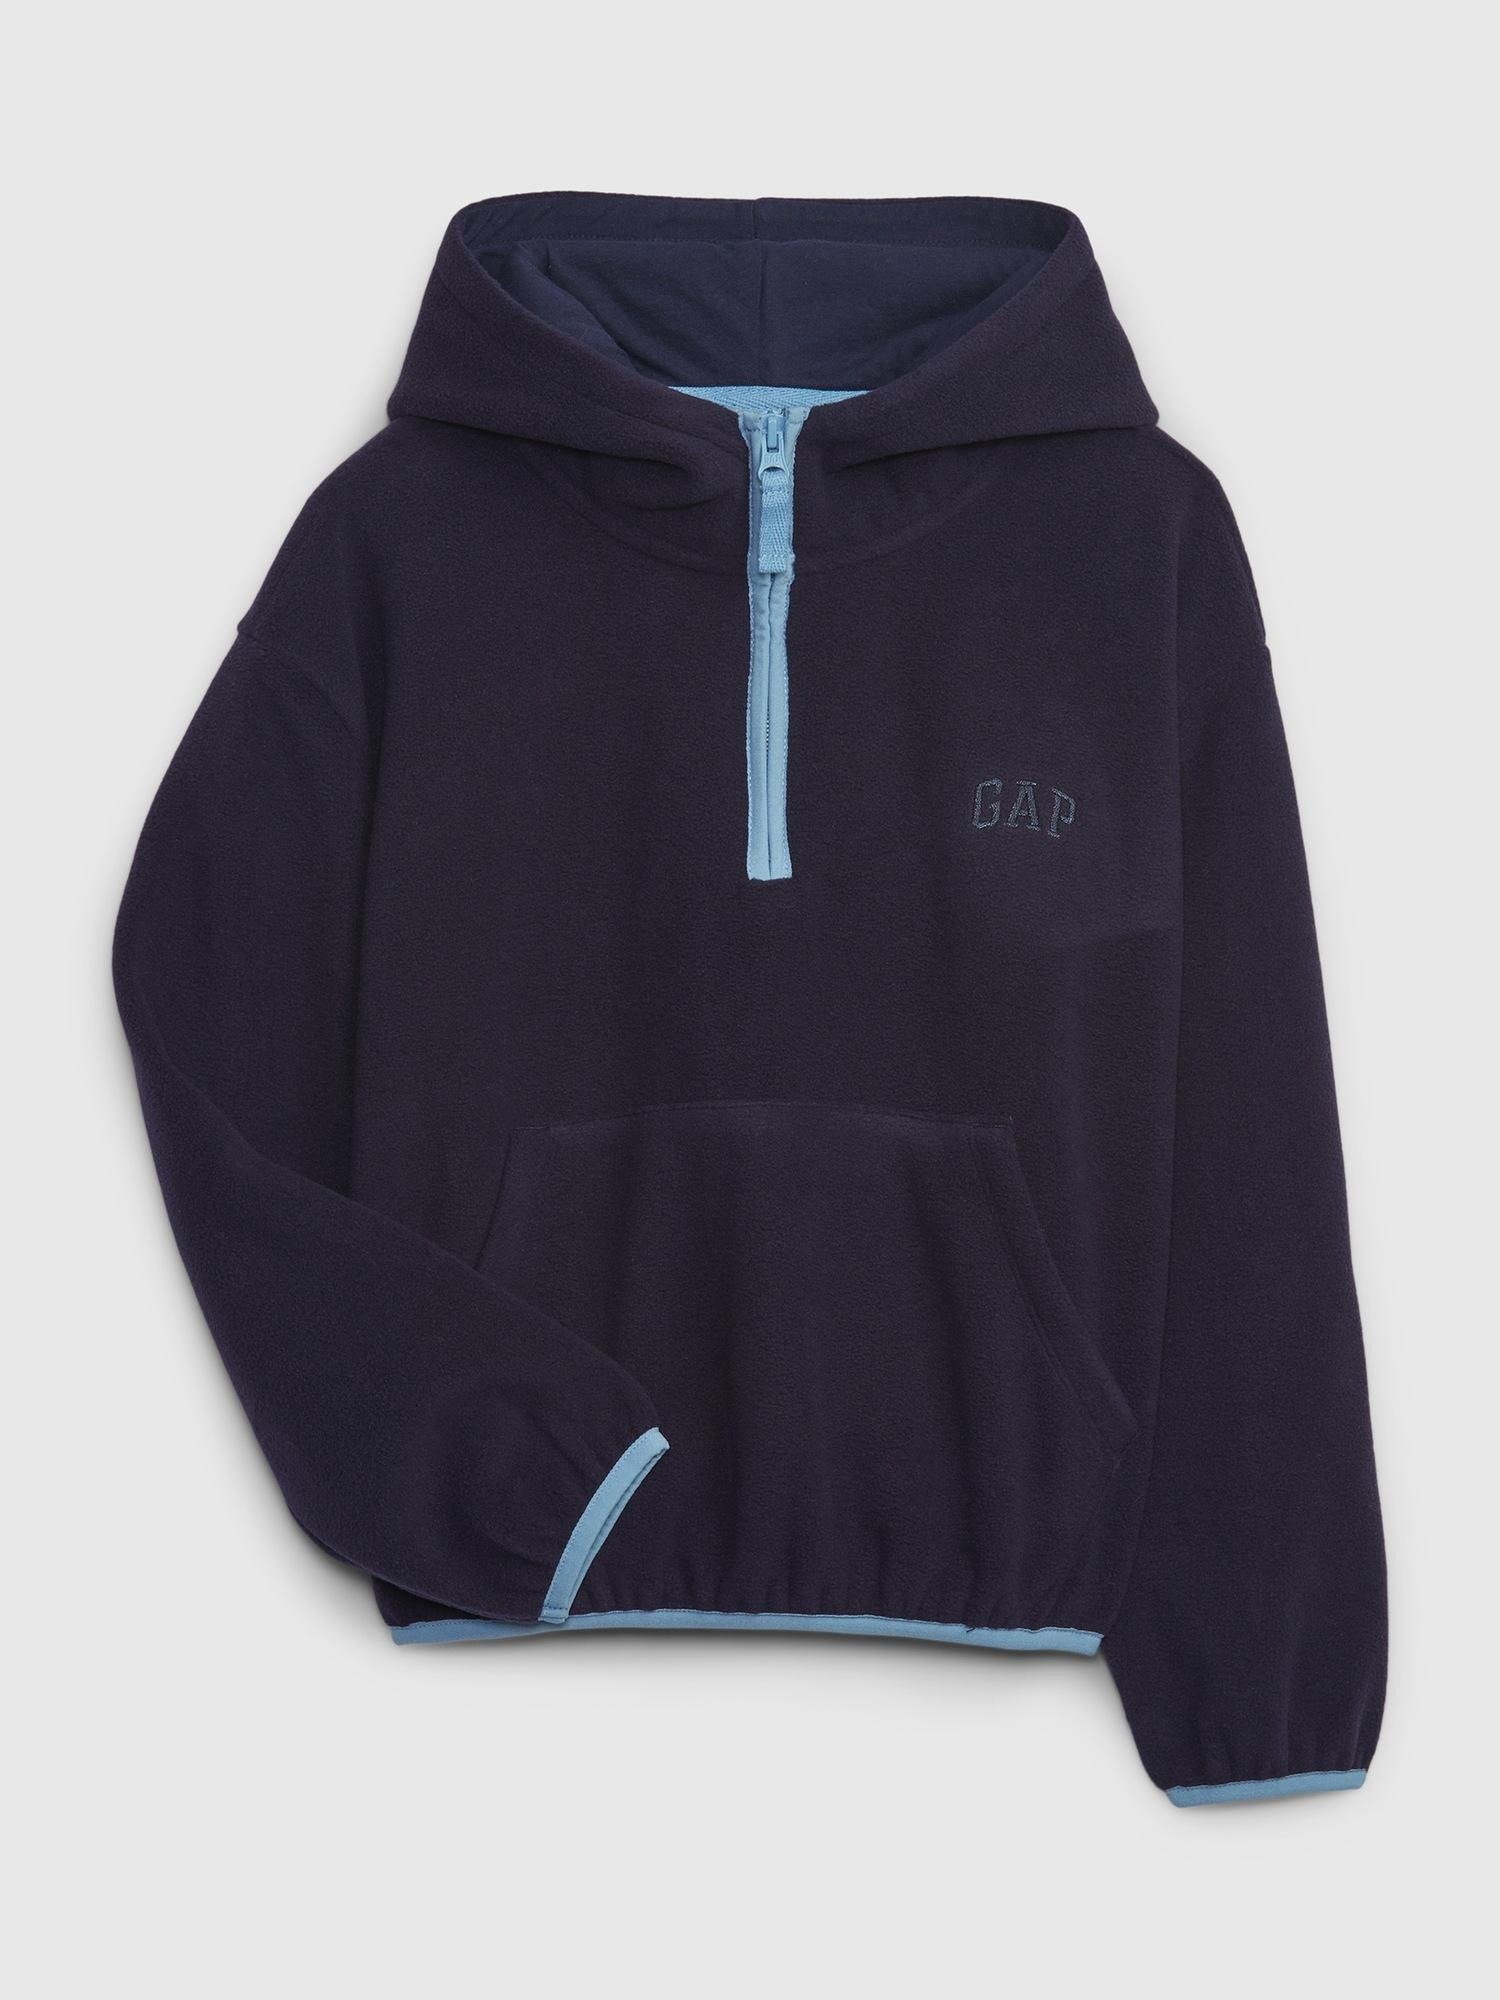 Gap Logo Pull-On Fleece Sweatshirt product image